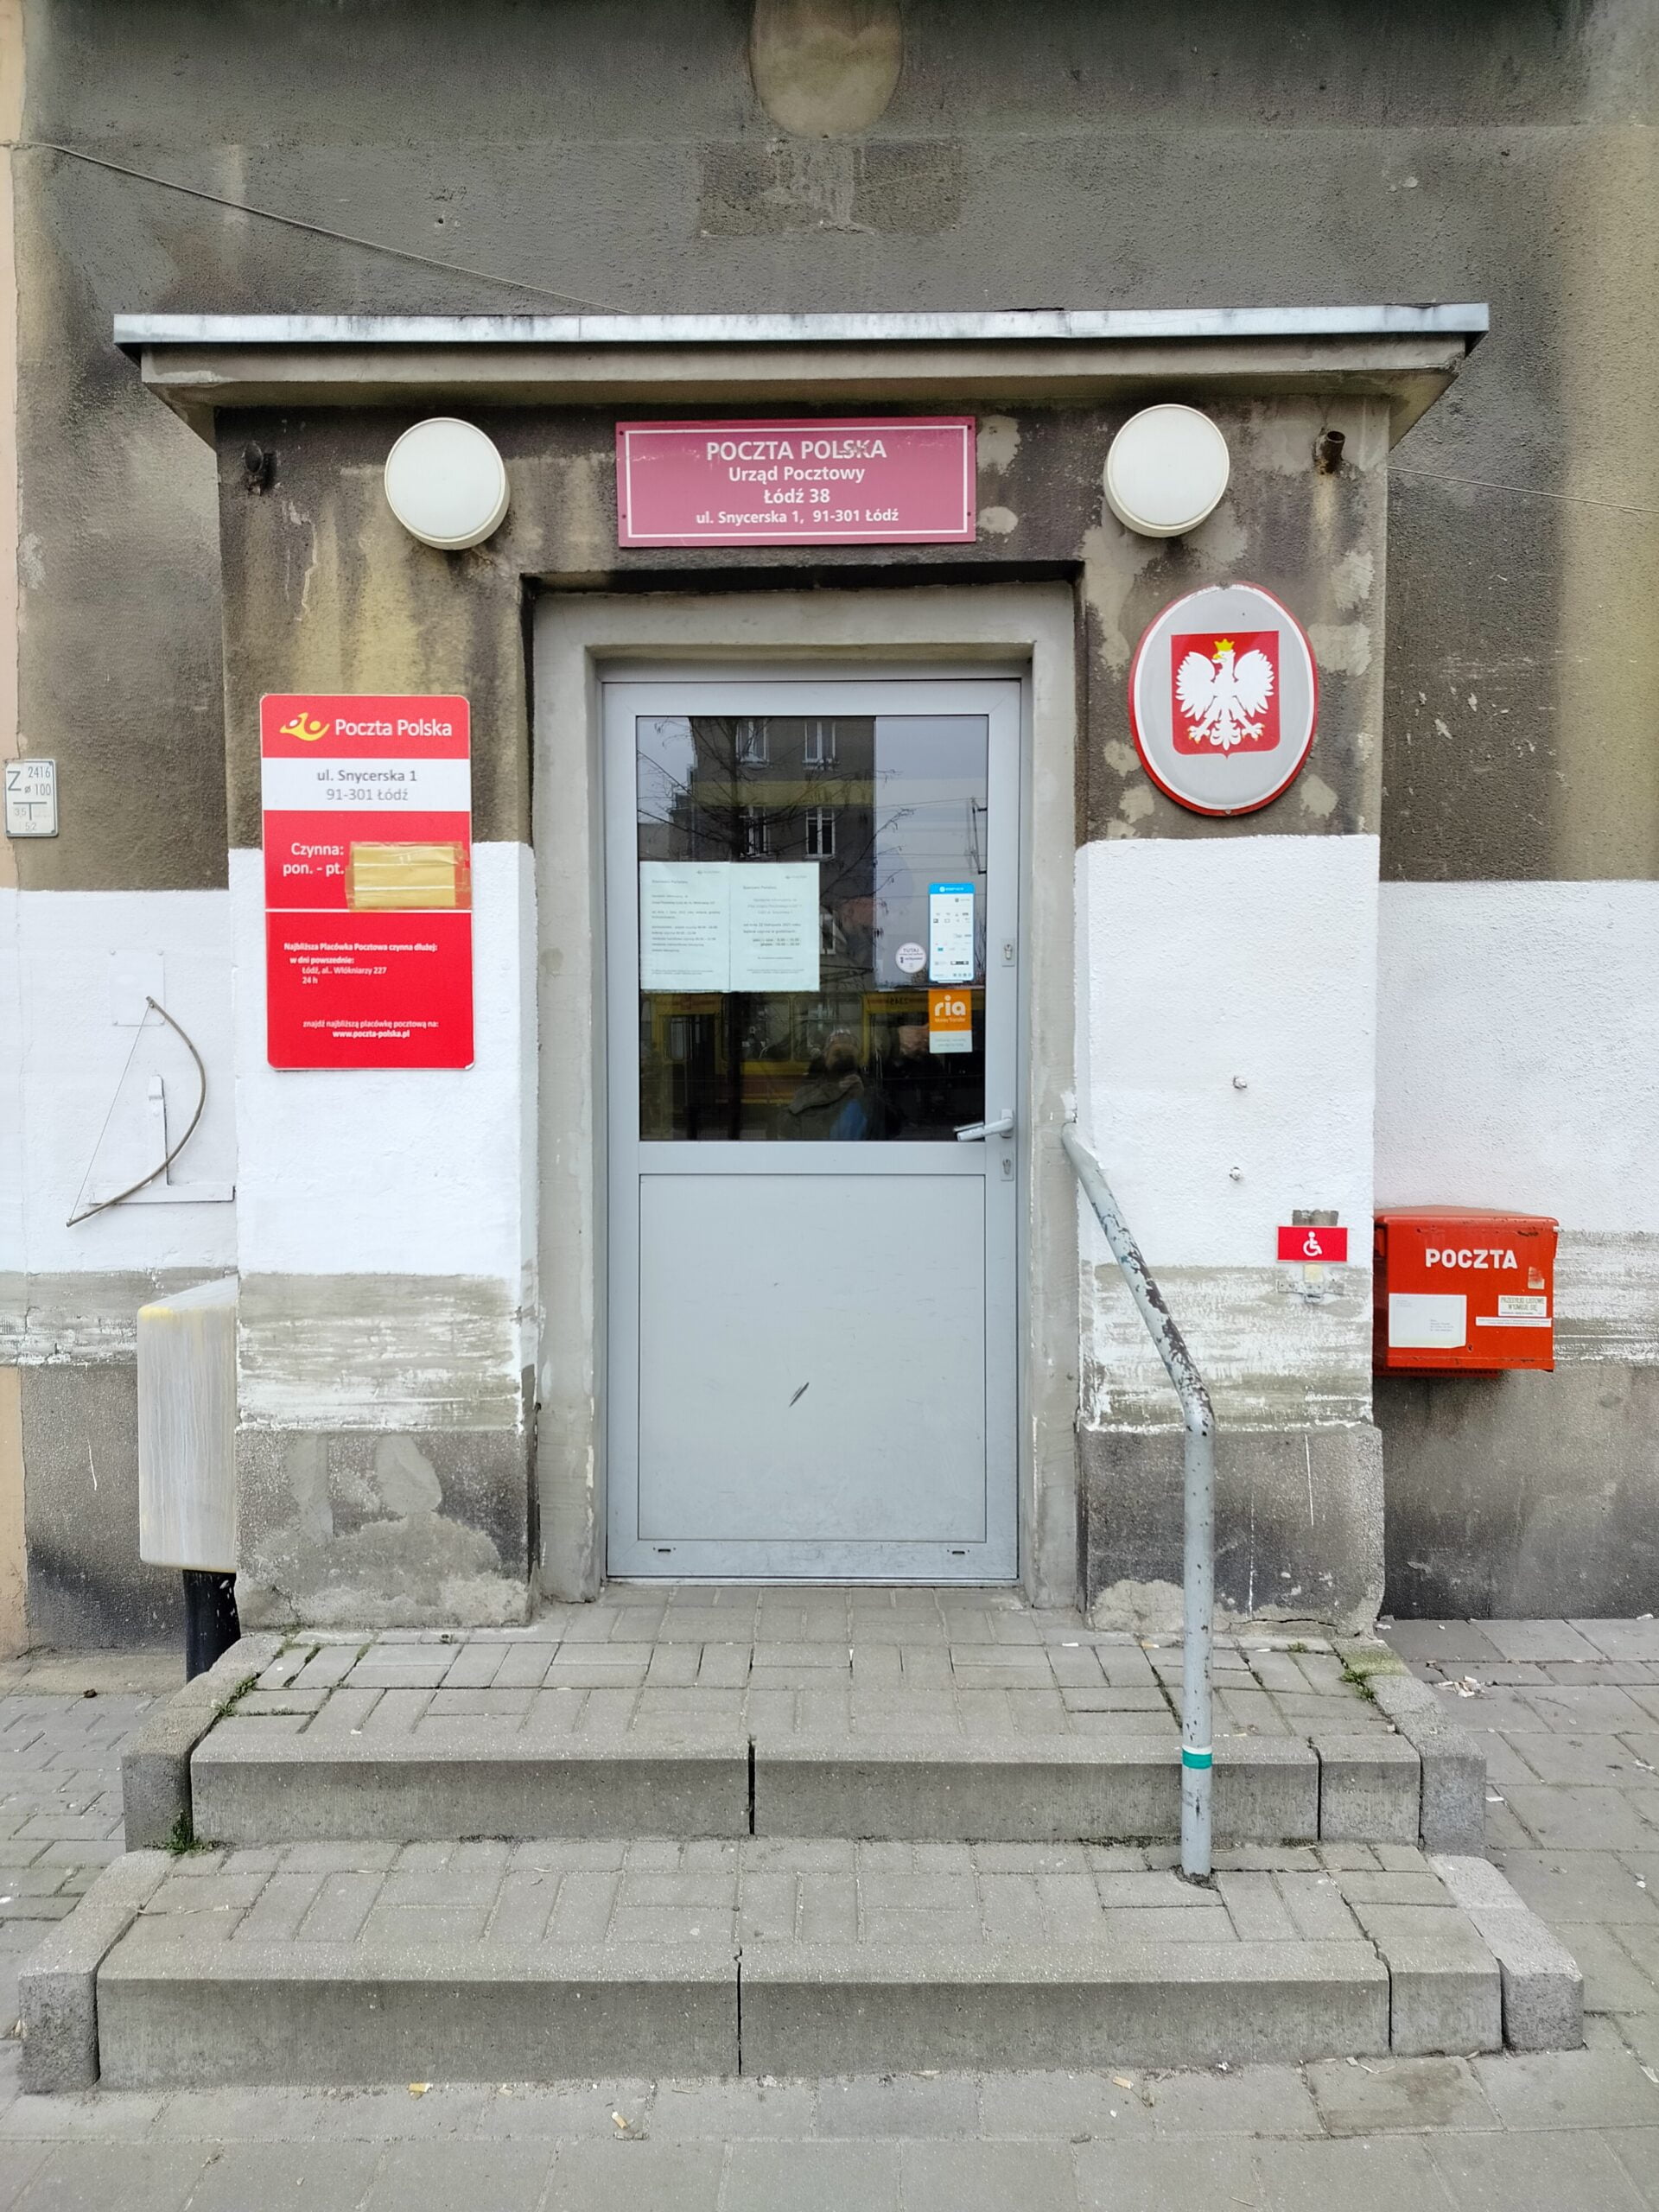 Widok z przodu na drzwi wejściowe do budynku. do drzwi prowadzą 2 stopnie z poręczą po prawej stronie. Nad prawą krawędzią schodów, za pochwytem widoczny biały piktogram osoby na wózku na czerwonym tle. Na drzwiami tablica informująca że jest to placówka poczty polskiej, po lewej stronie drzwi tablica z godzinami otwarcia, po prawej stronie drzwi godło polskie.